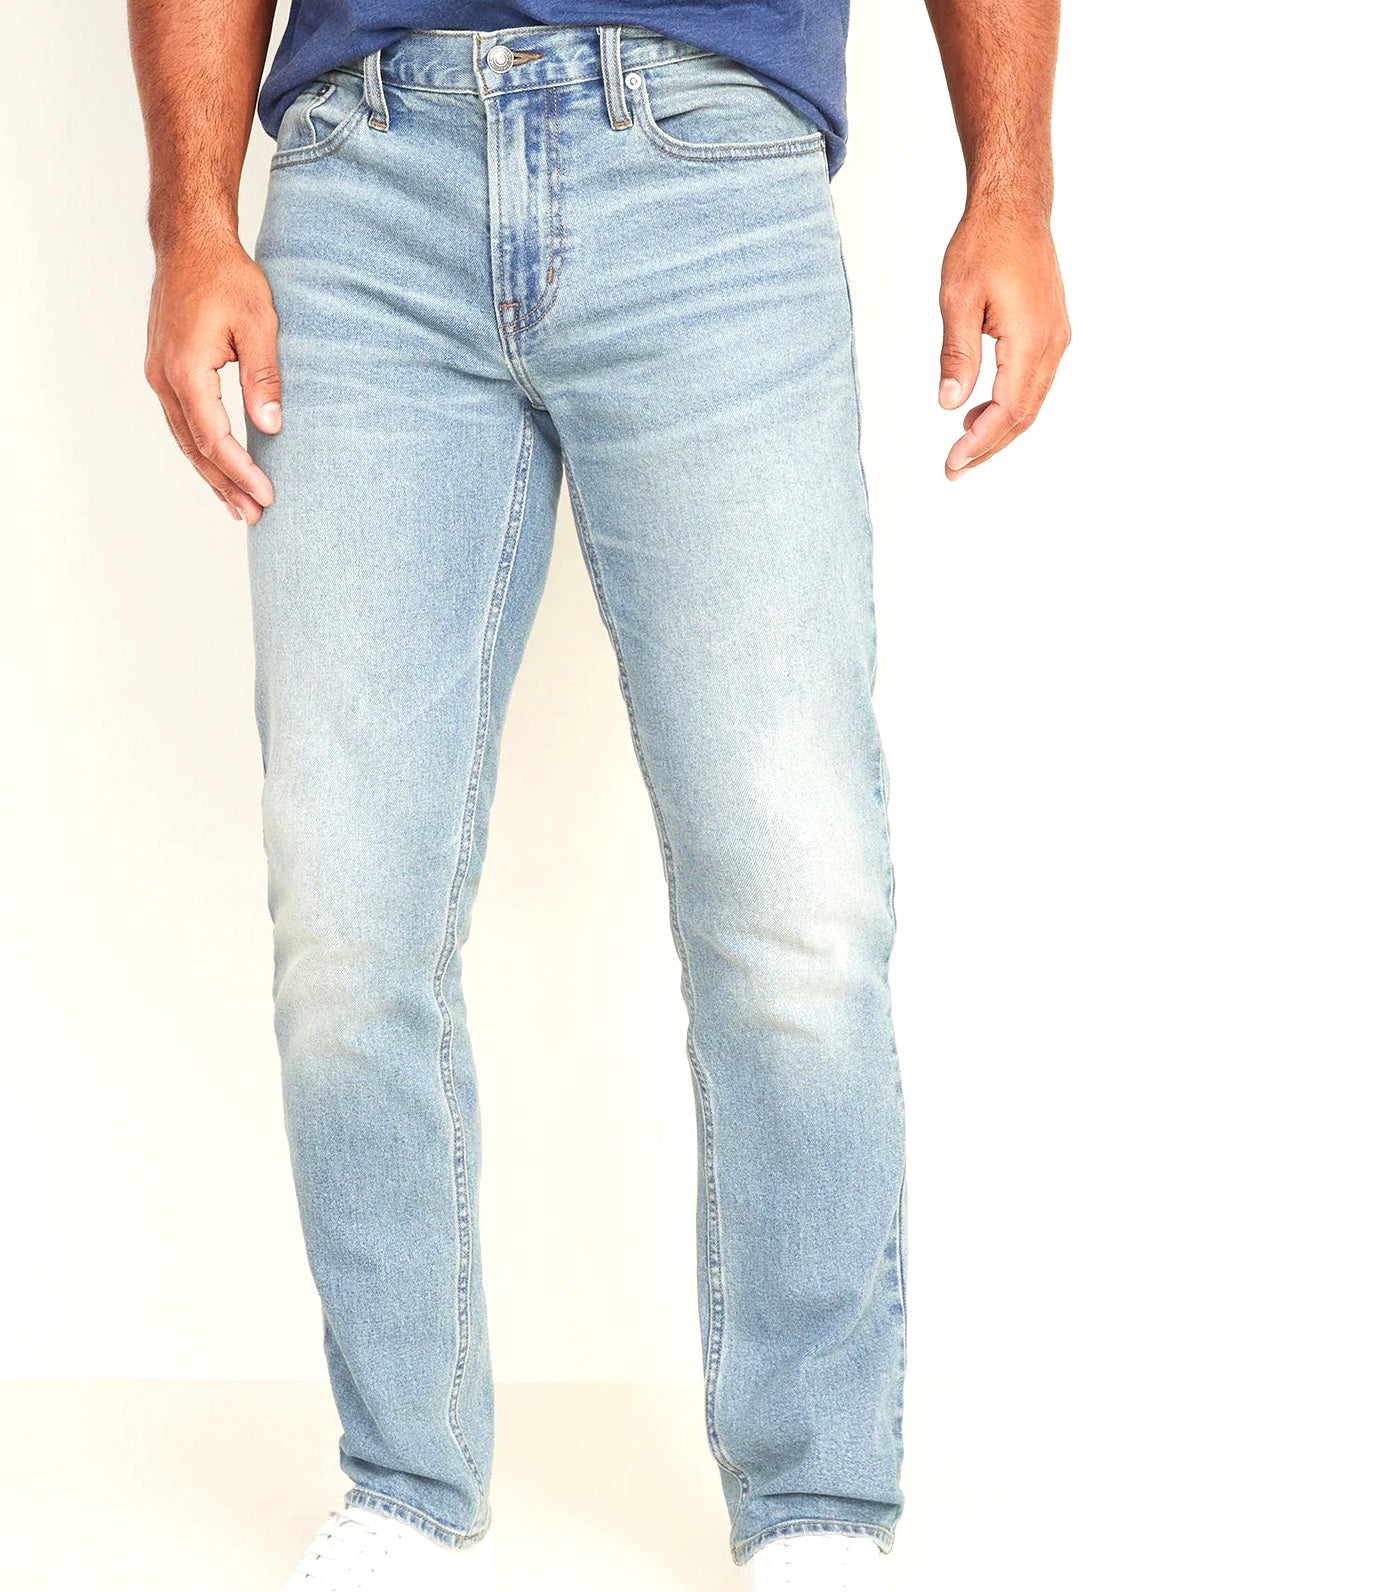 Straight Built-In Flex Jeans for Men Light Wash